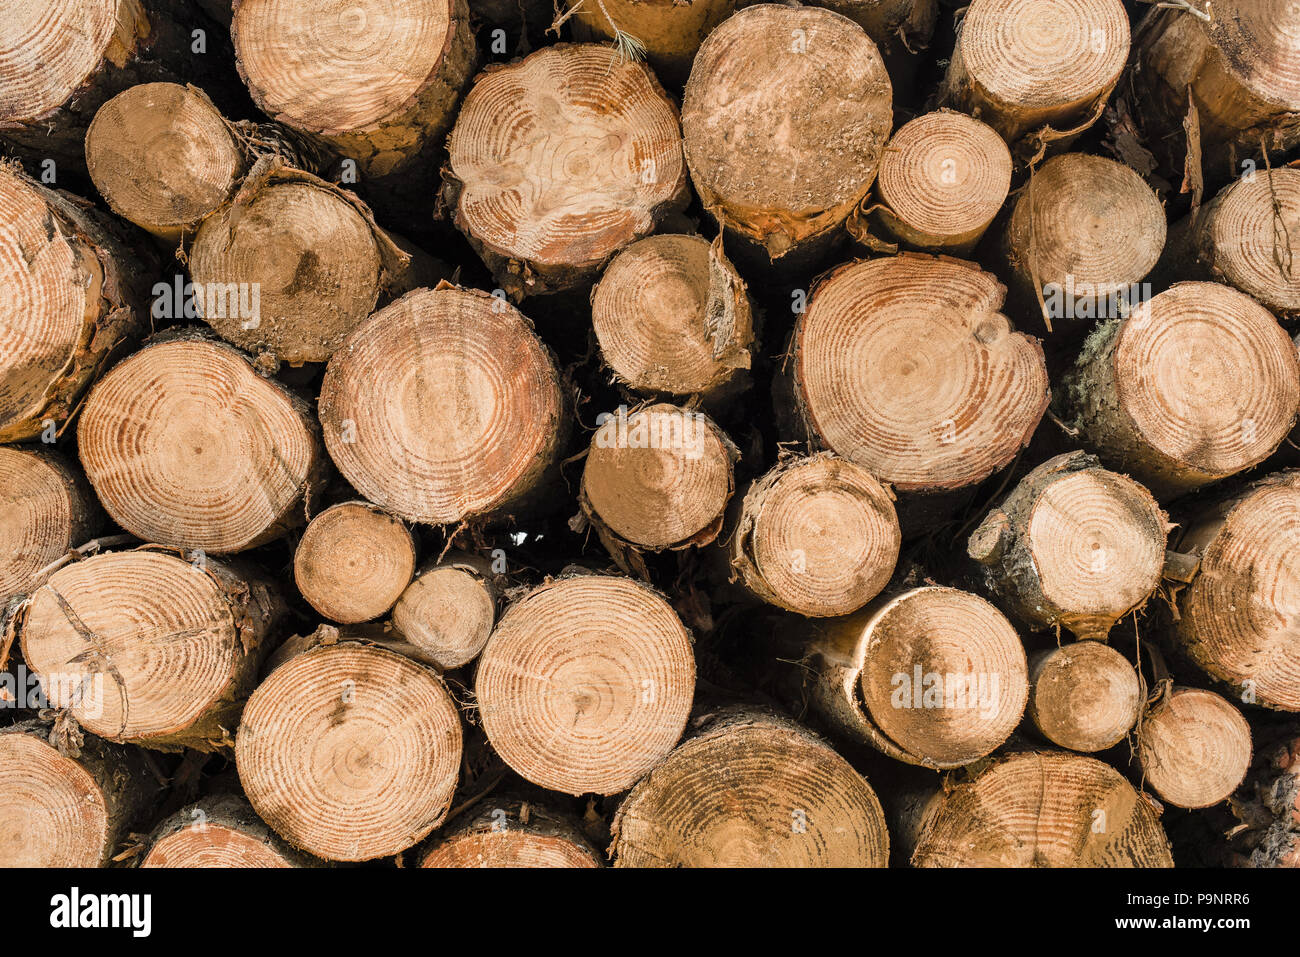 Holz baum Protokolle für die Holzindustrie. Holz- trunk Haufen, Stapel Holz Textur Hintergrund. Stockfoto